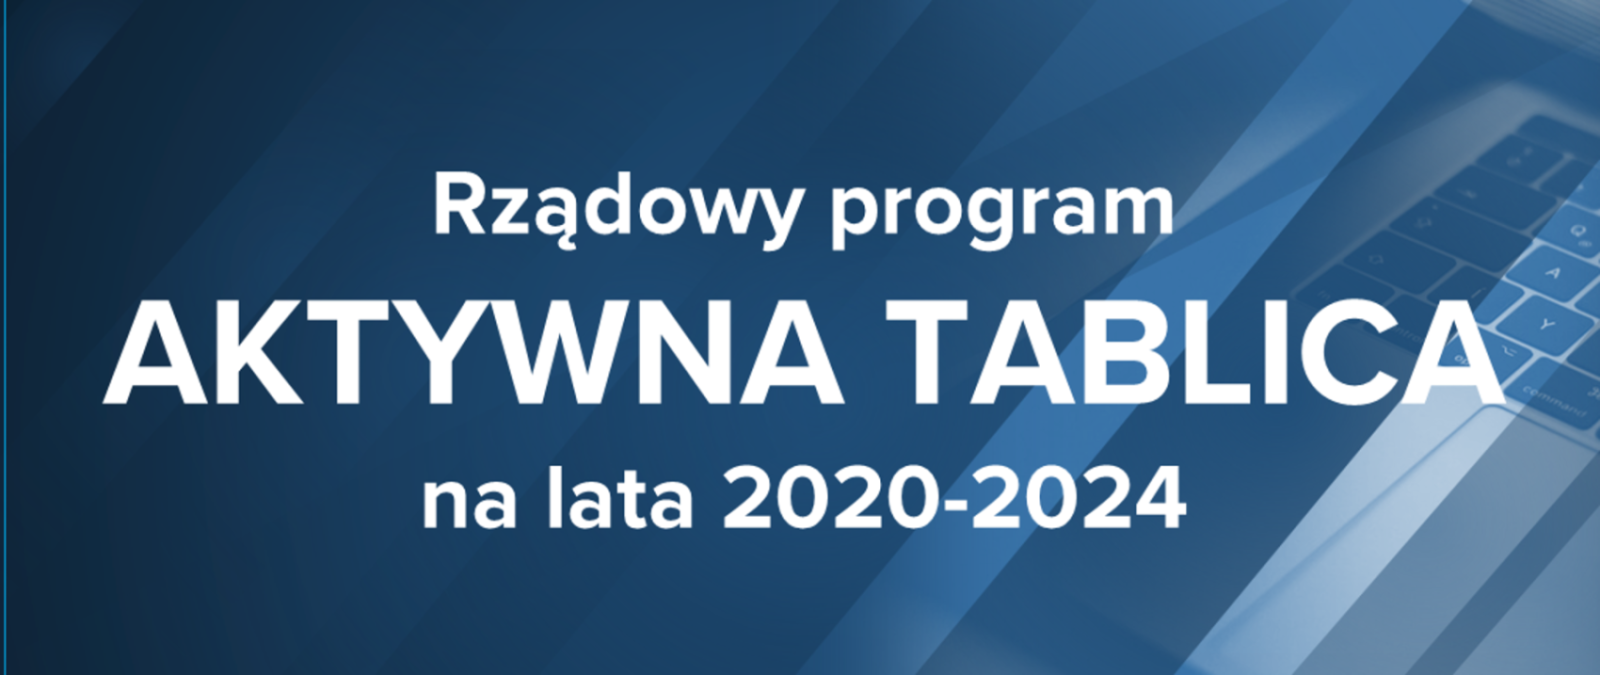 You are currently viewing Rządowy program Aktywna tablica